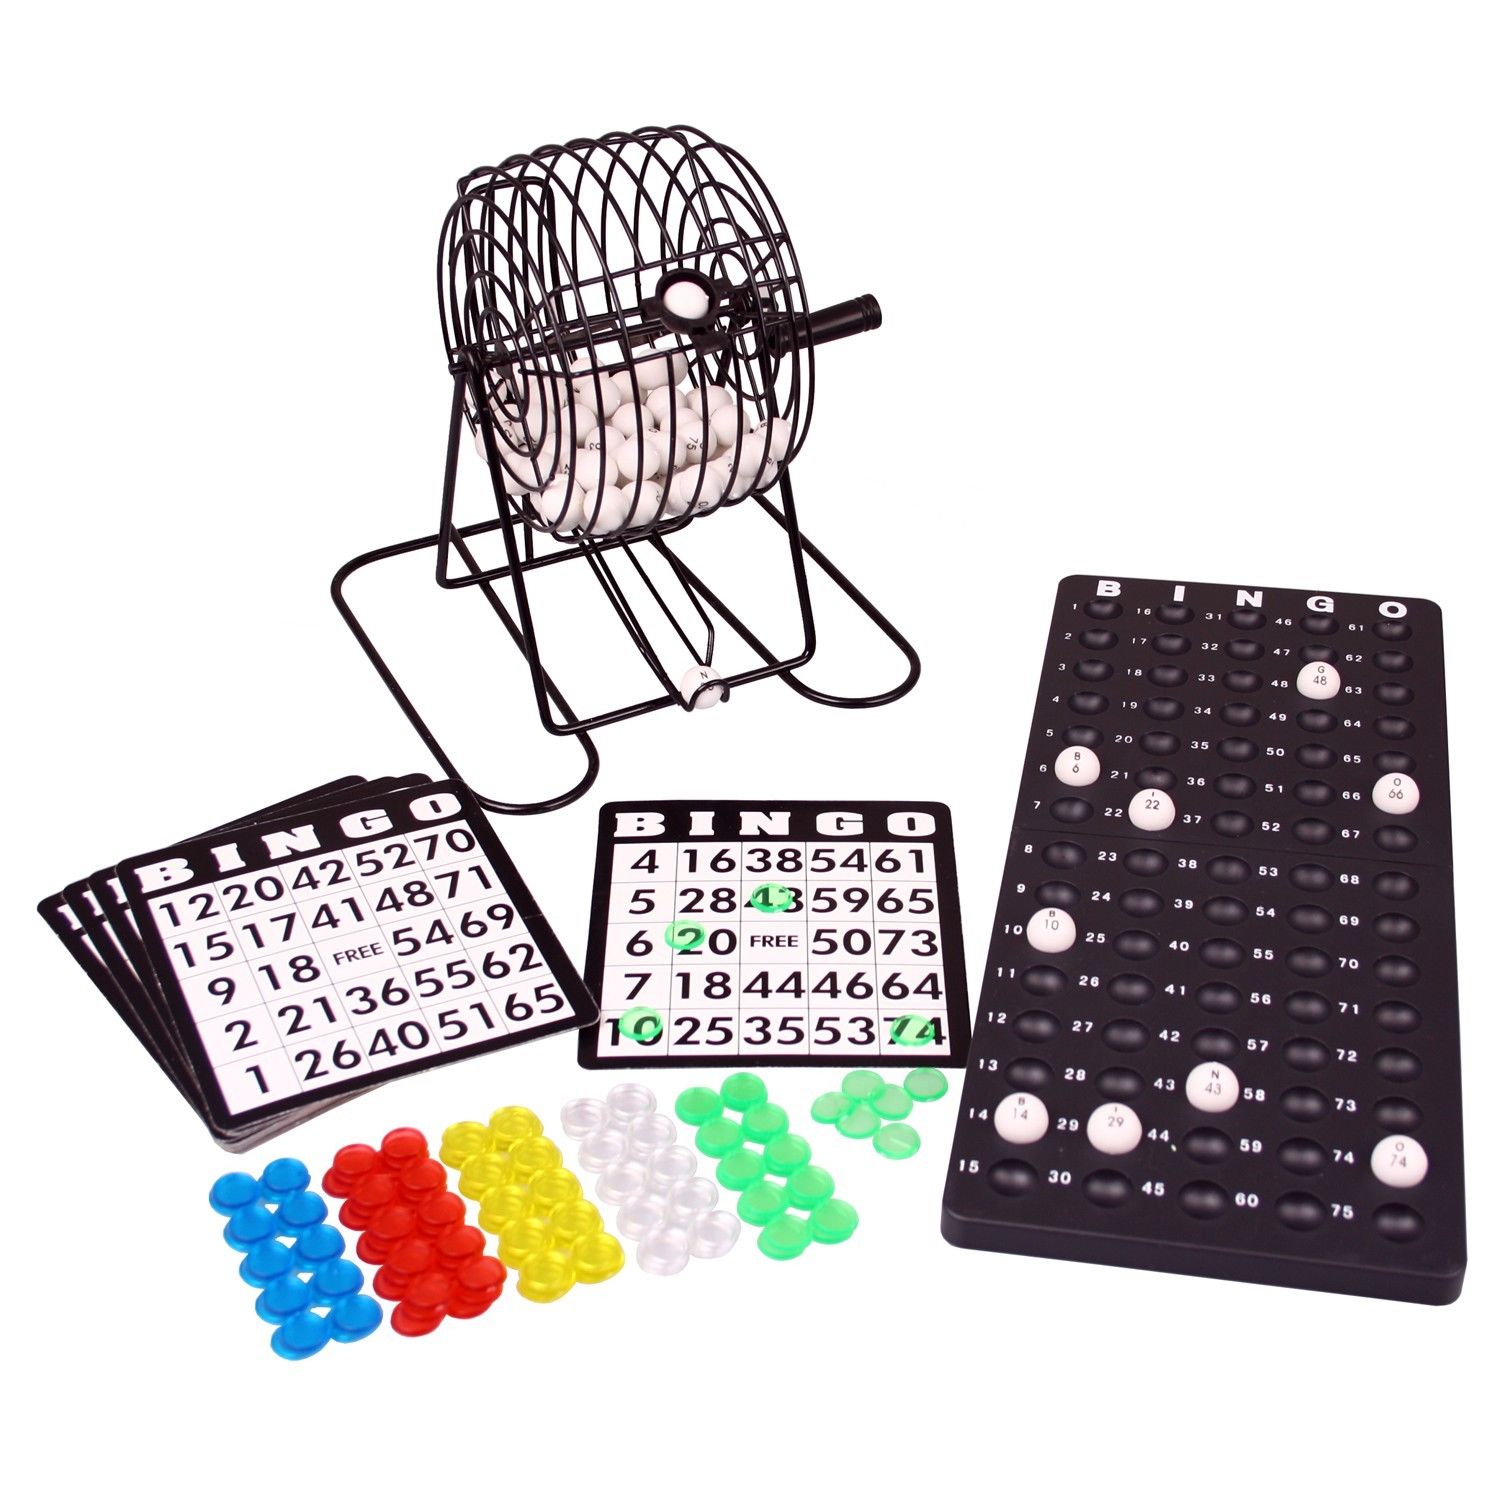 BINGO Spiel-Set mit Bingomühle Metall-Trommel und Zubehör Lotto Bingotrommel